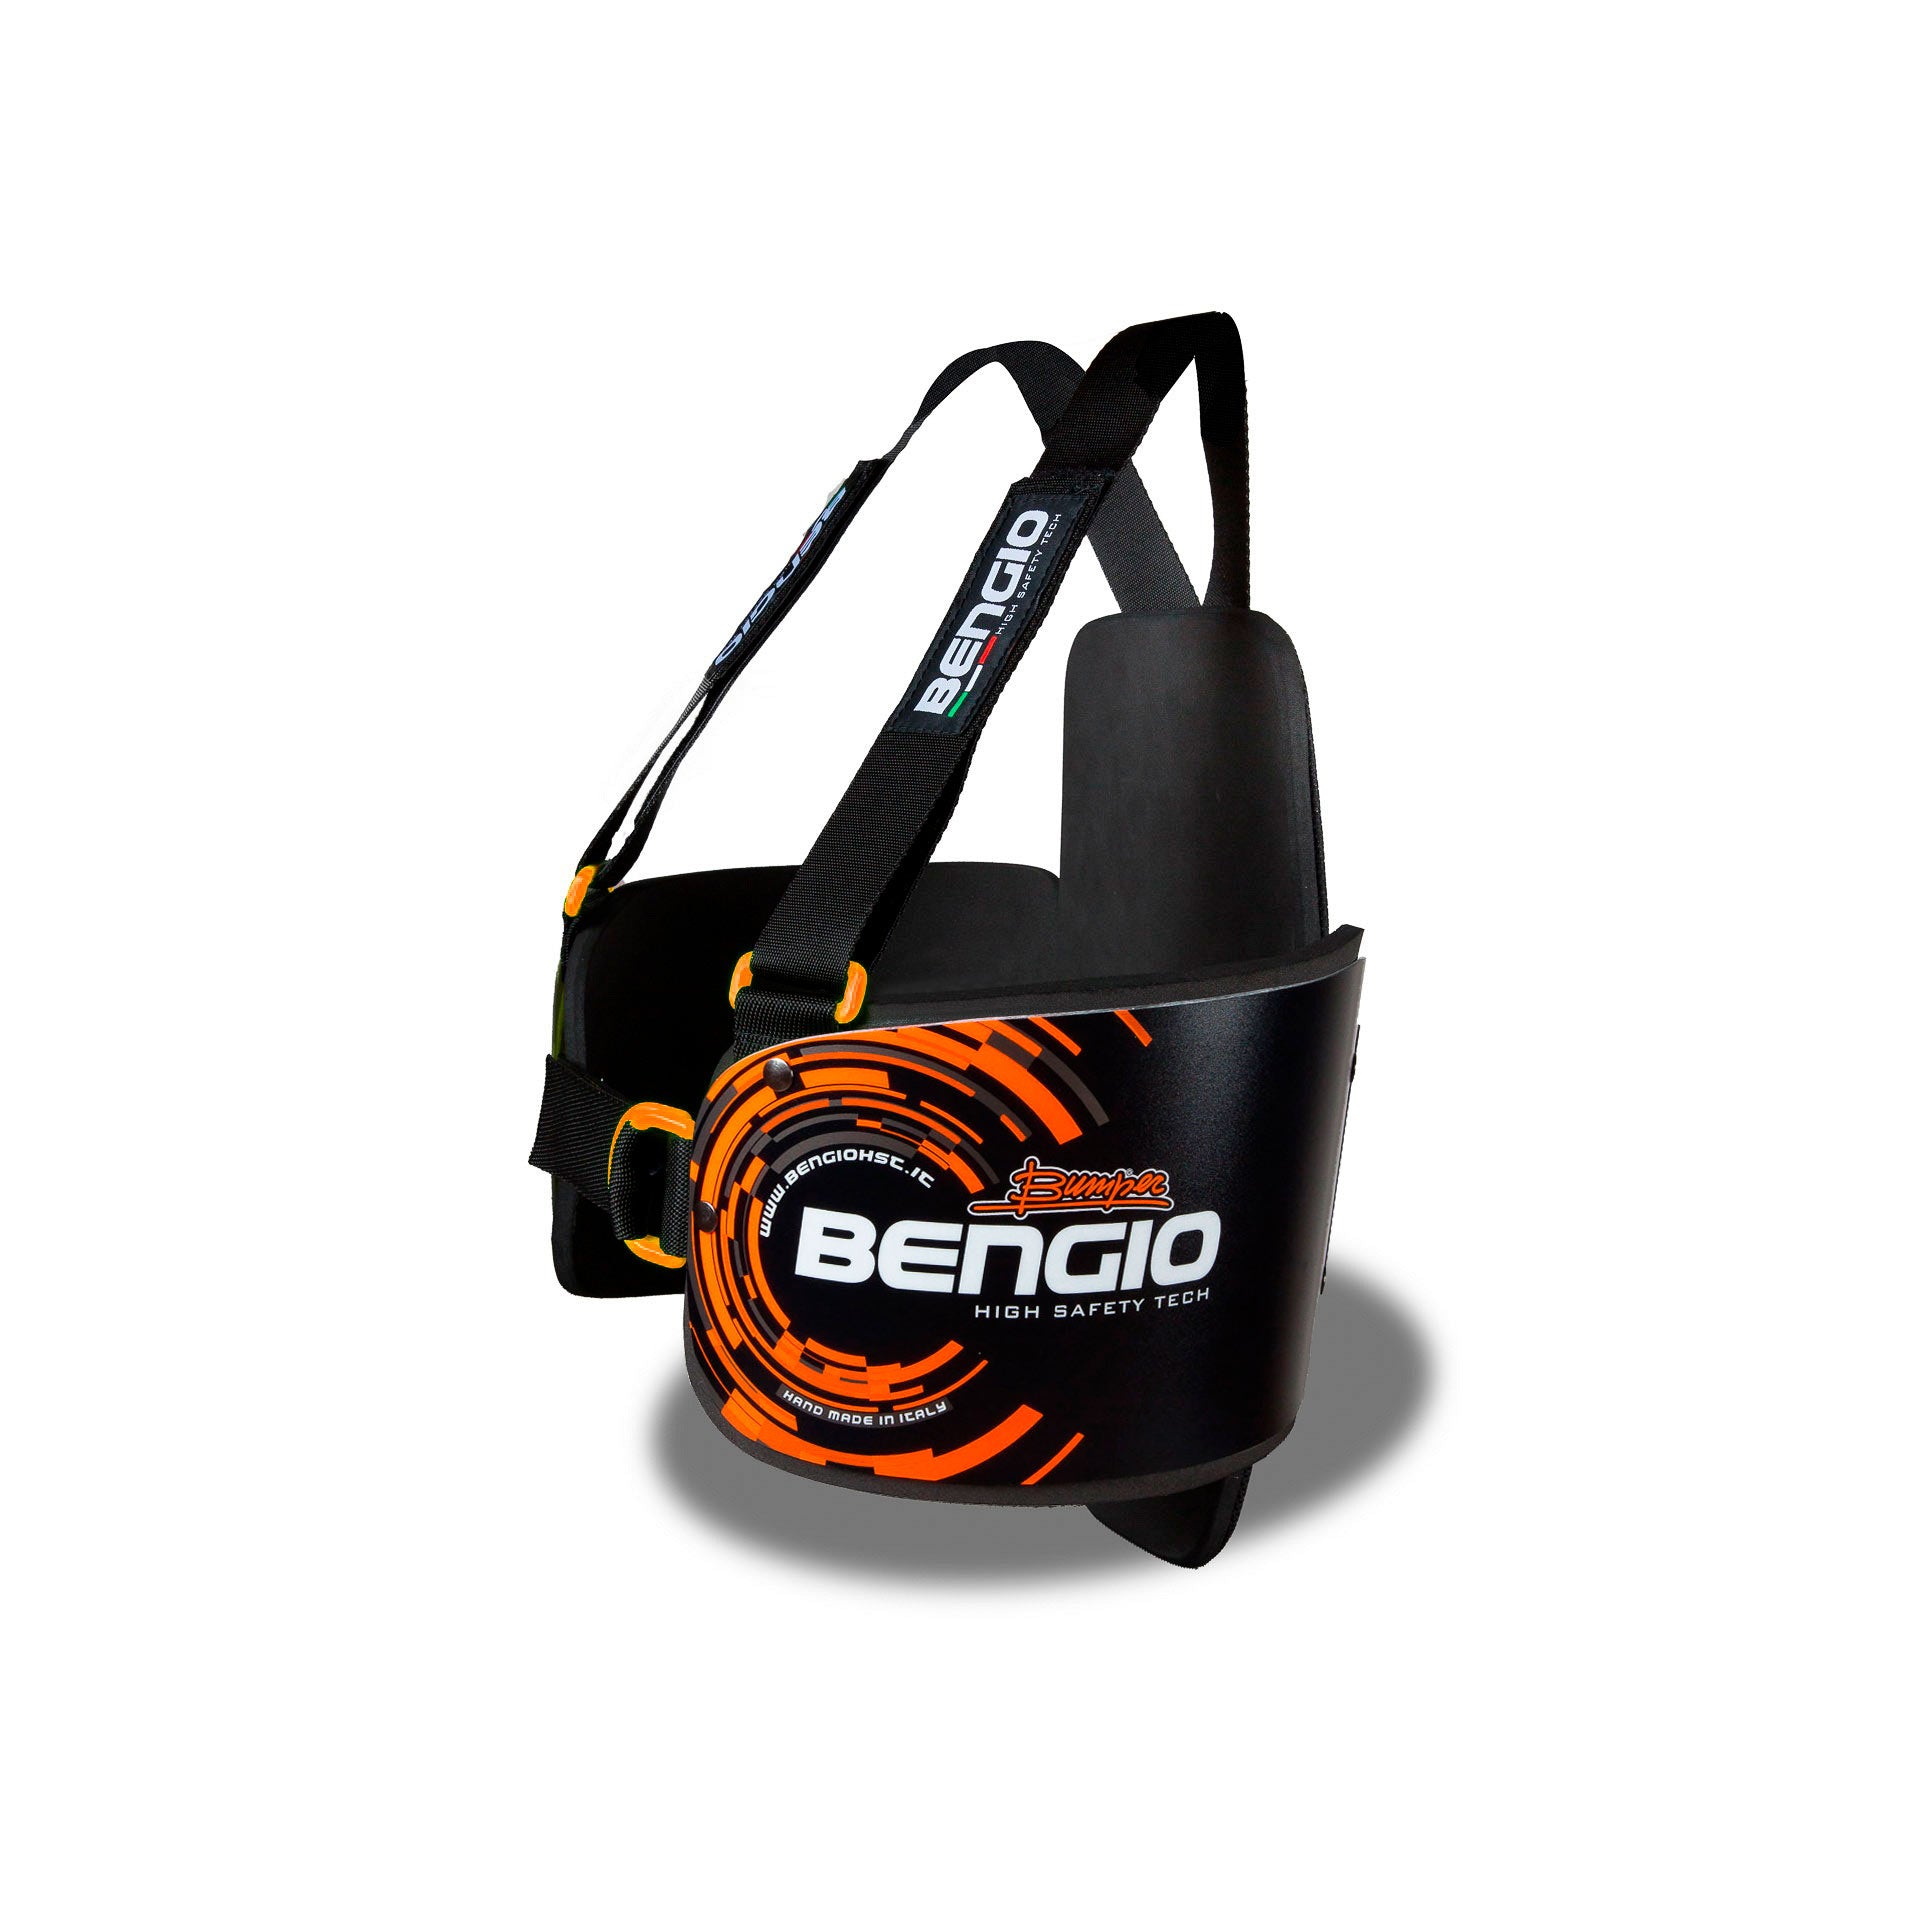 BENGIO STDPLLBO BUMPER Plus Захист ребер для картингу, чорний/помаранчевий, розмір L Photo-1 